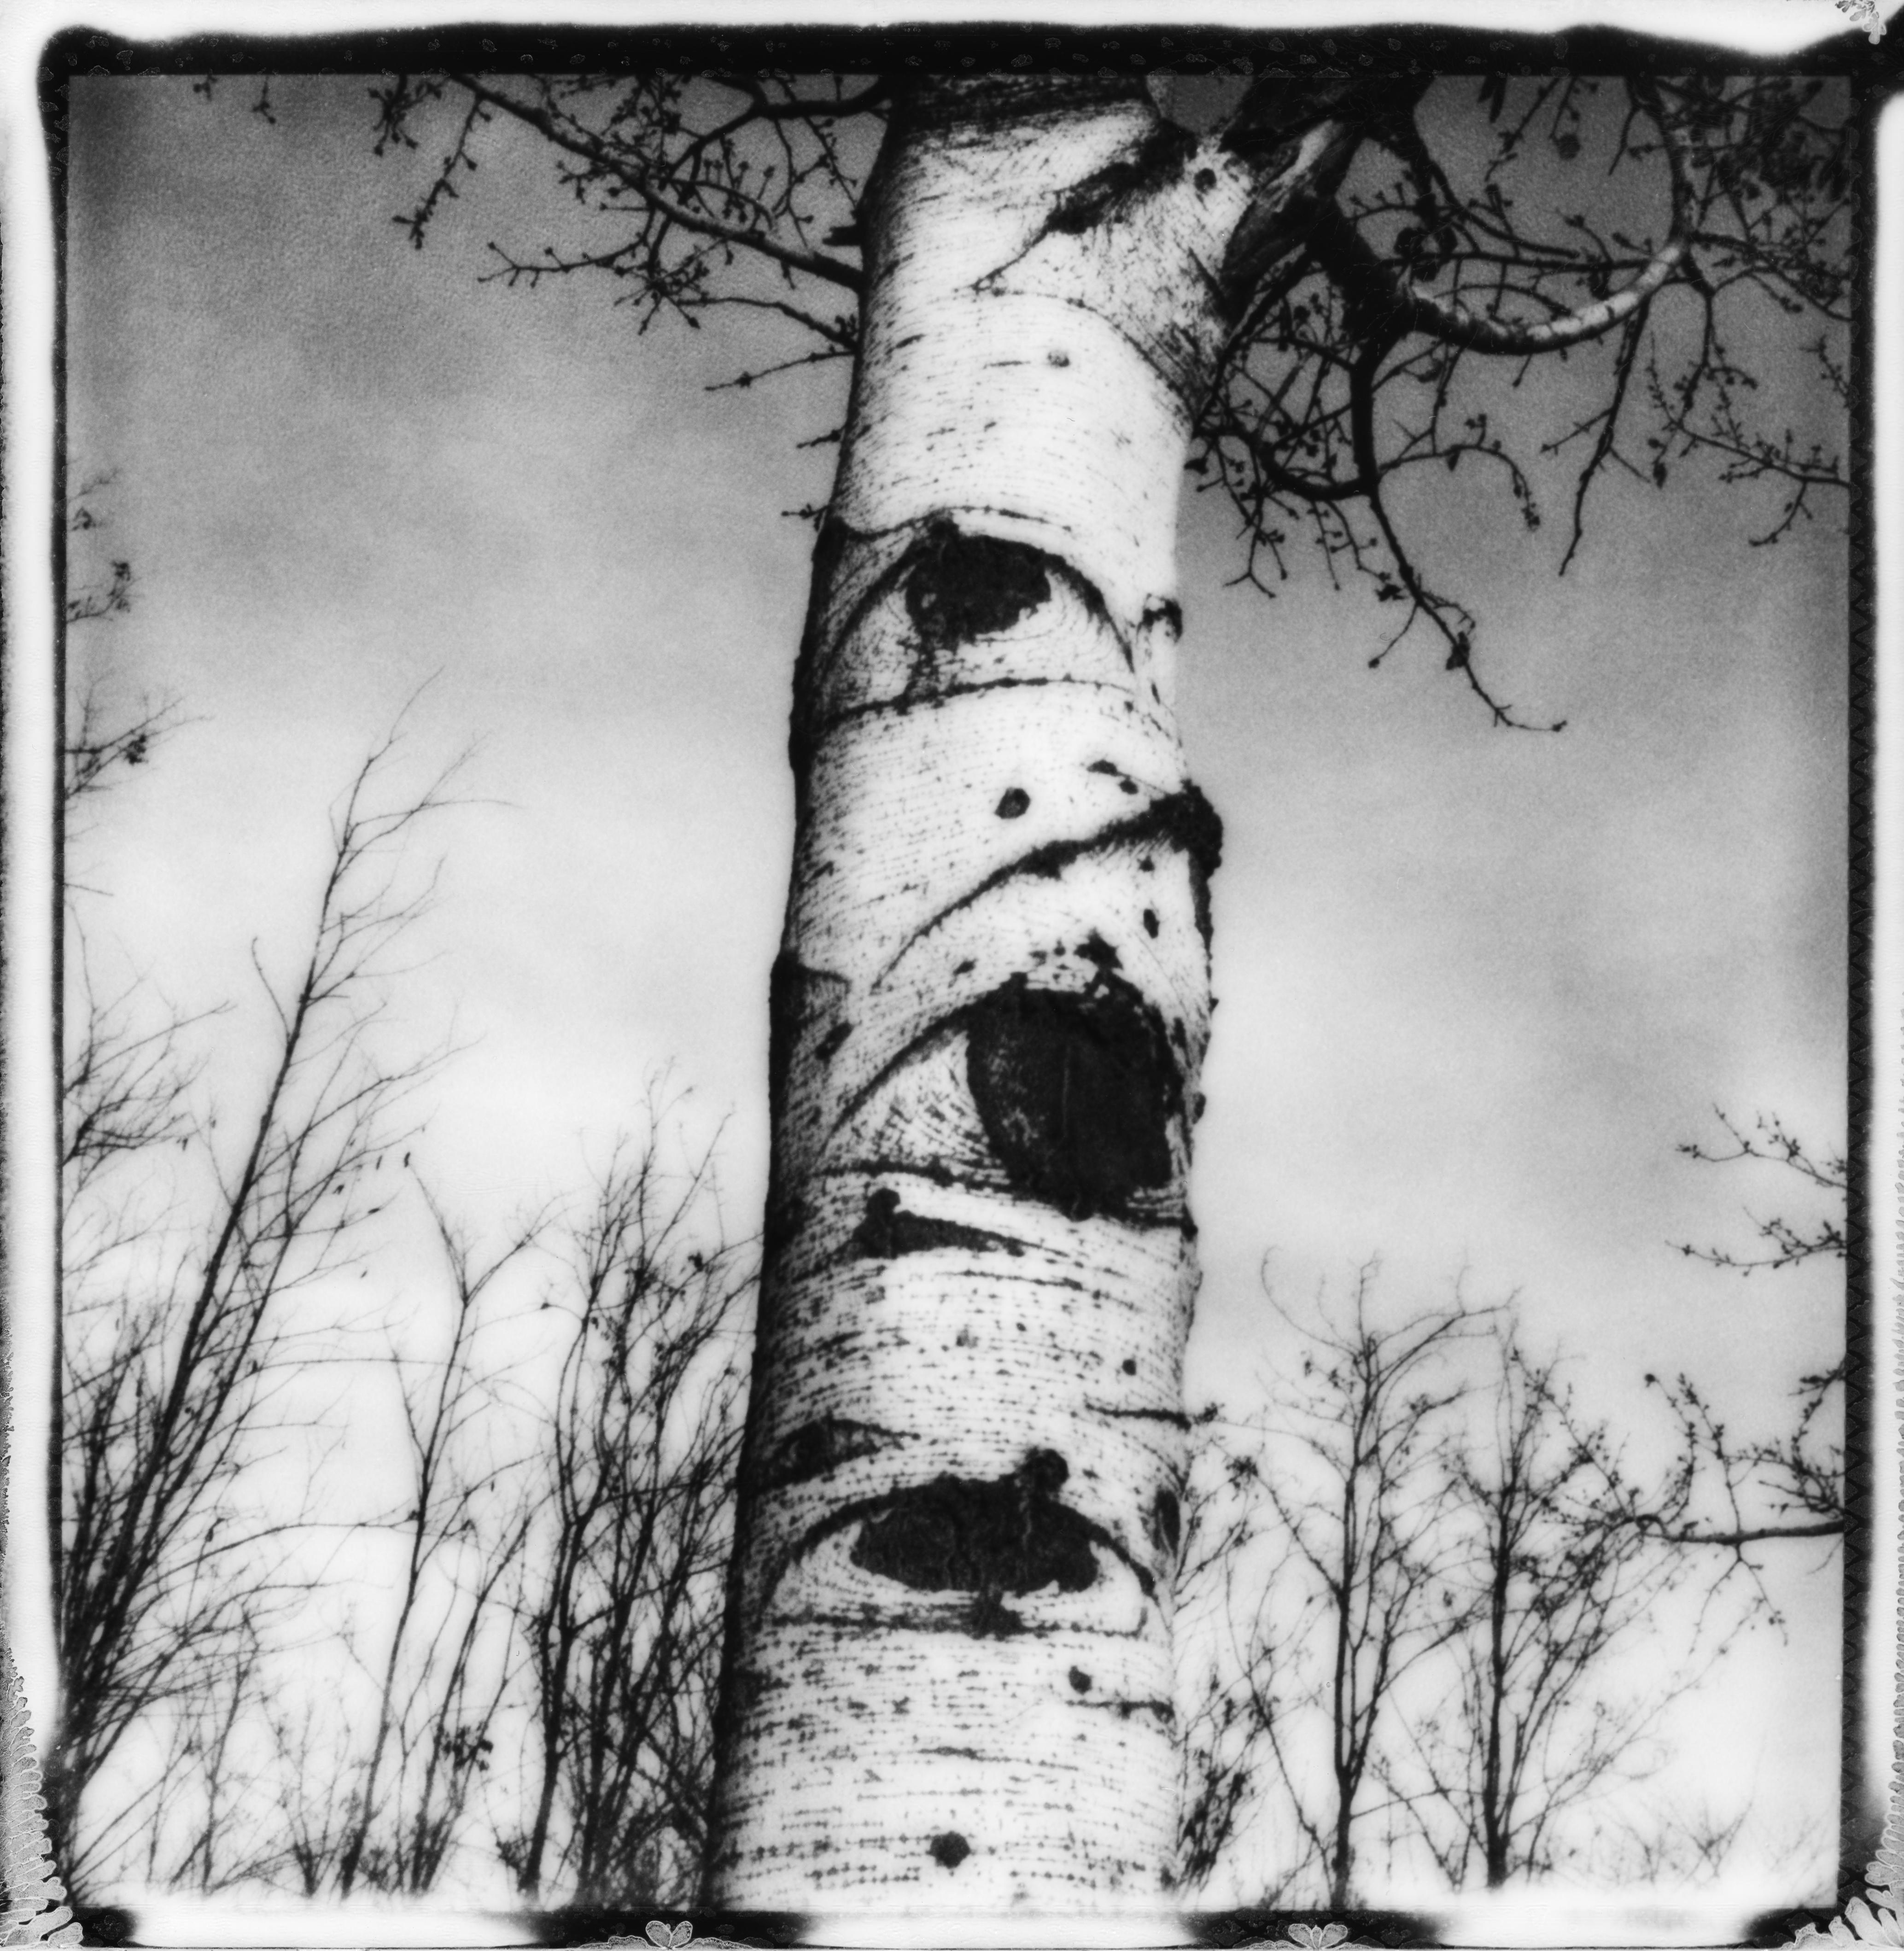 Whiting" - Photographie polaroid en noir et blanc de natures mortes